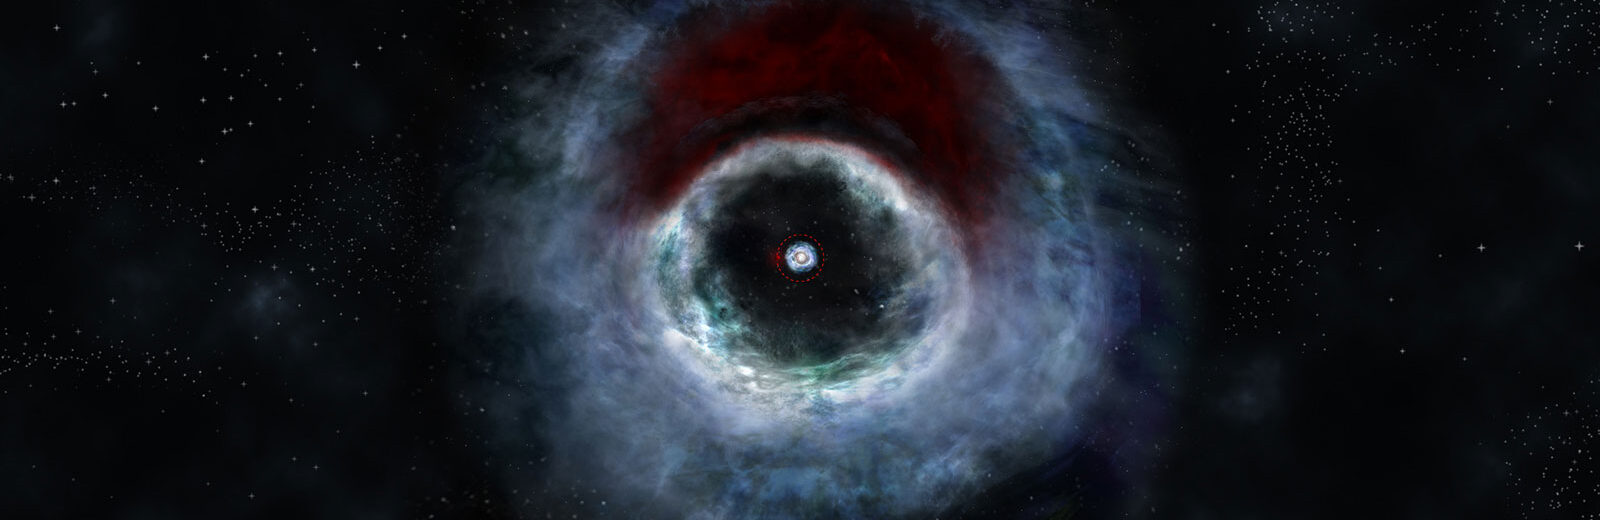 ¿Cómo calcular exactamente la masa de un agujero negro con ALMA? 